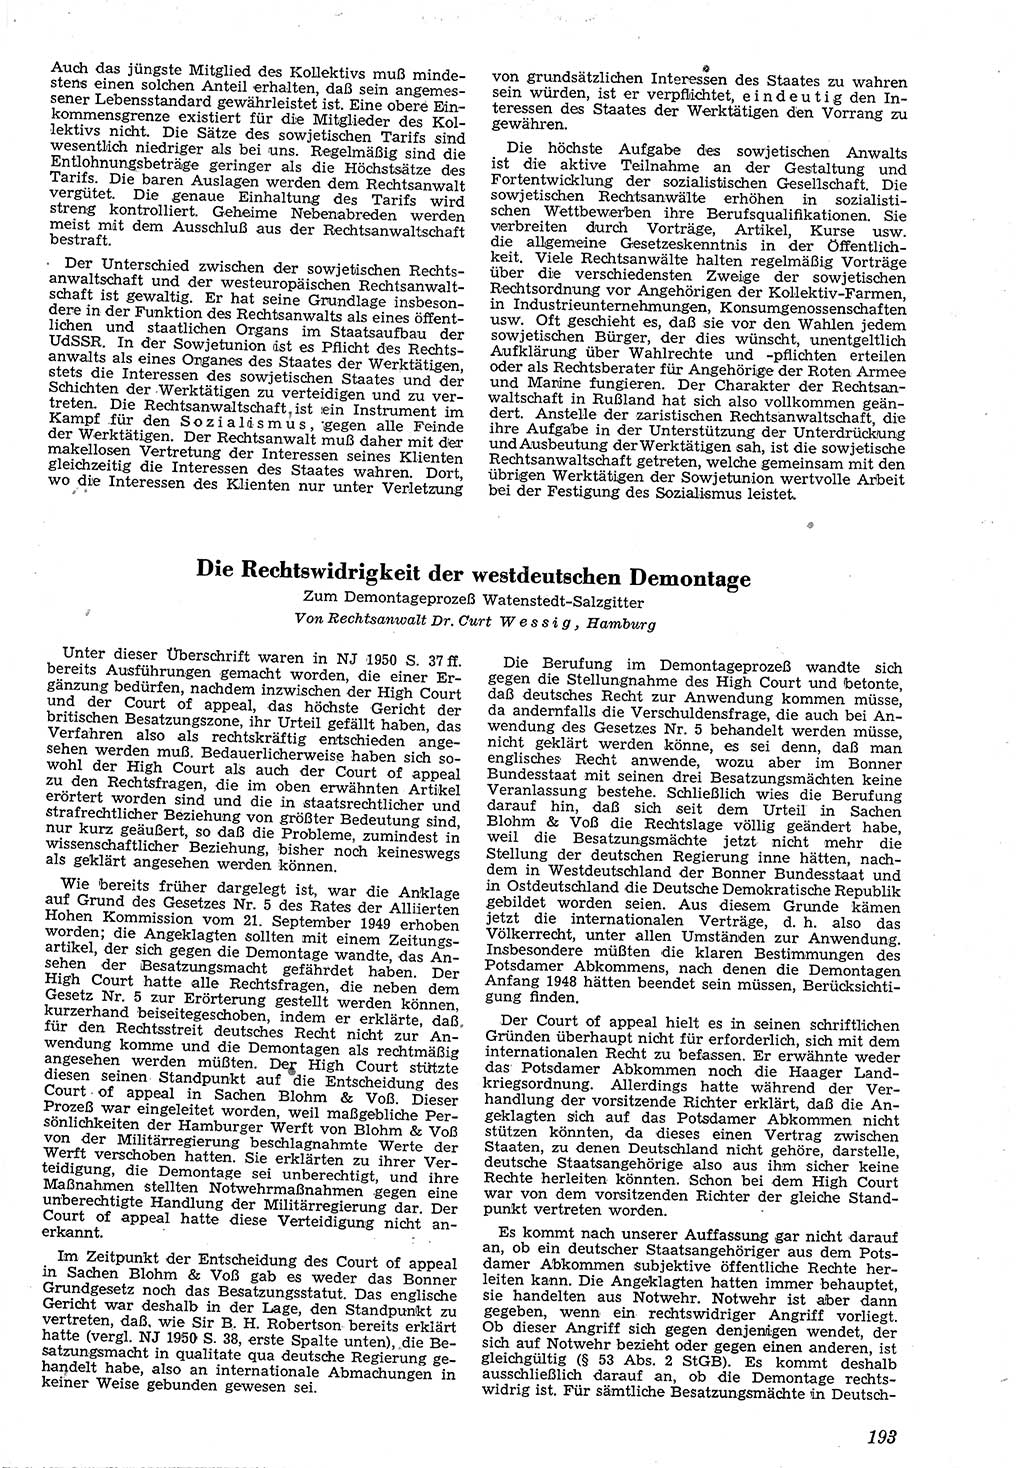 Neue Justiz (NJ), Zeitschrift für Recht und Rechtswissenschaft [Deutsche Demokratische Republik (DDR)], 4. Jahrgang 1950, Seite 193 (NJ DDR 1950, S. 193)